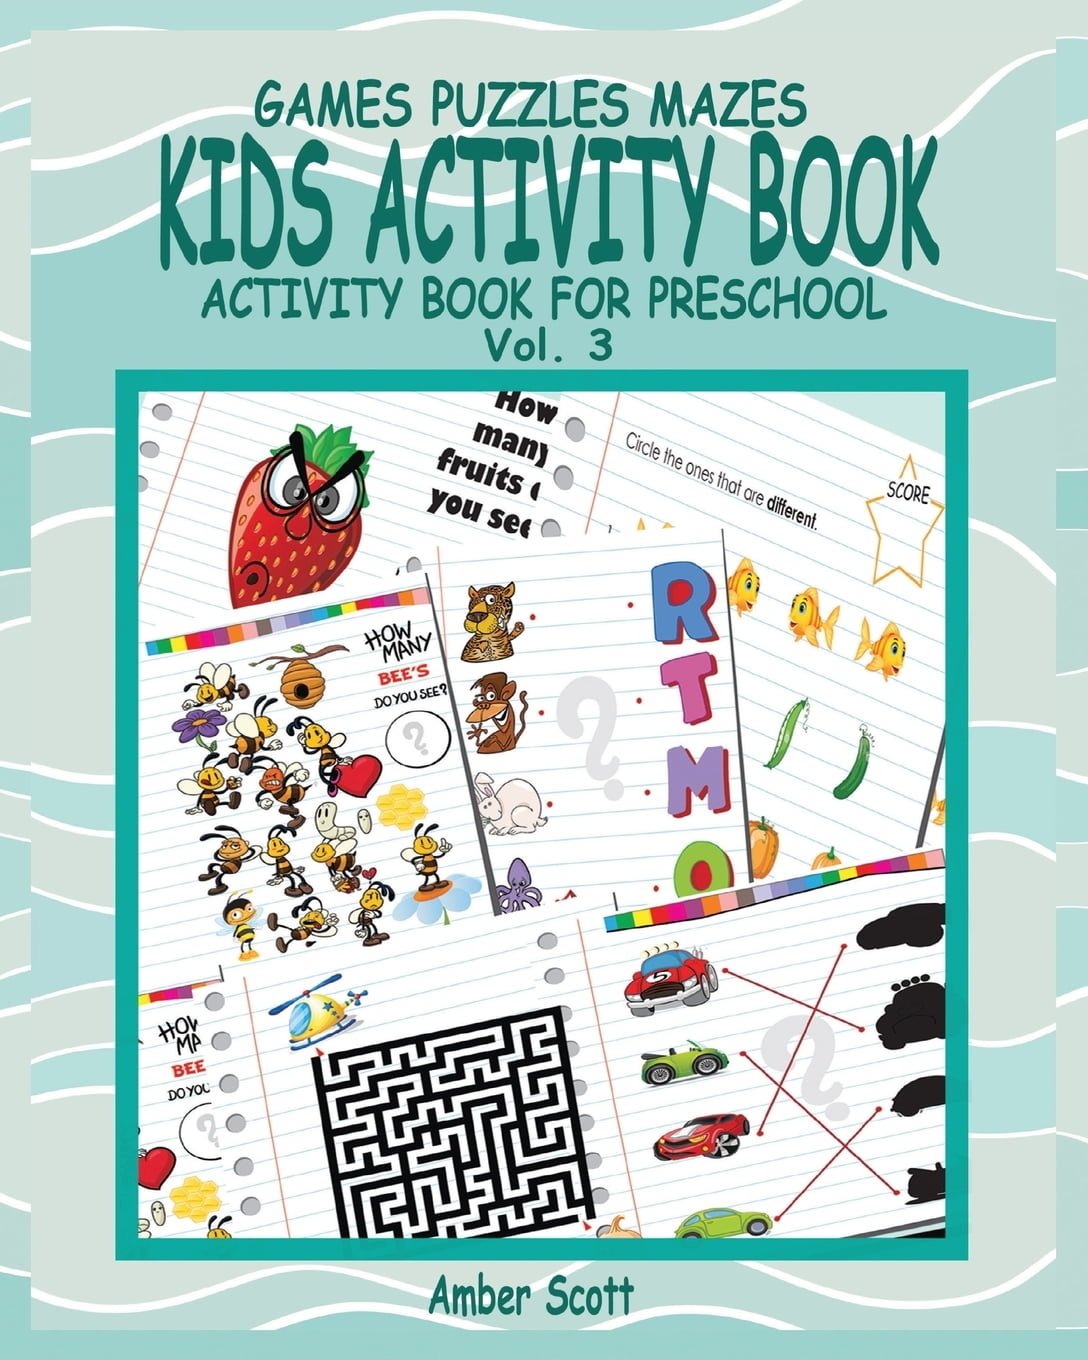 kids-activity-book-vol-3-activity-book-for-preschool-walmart